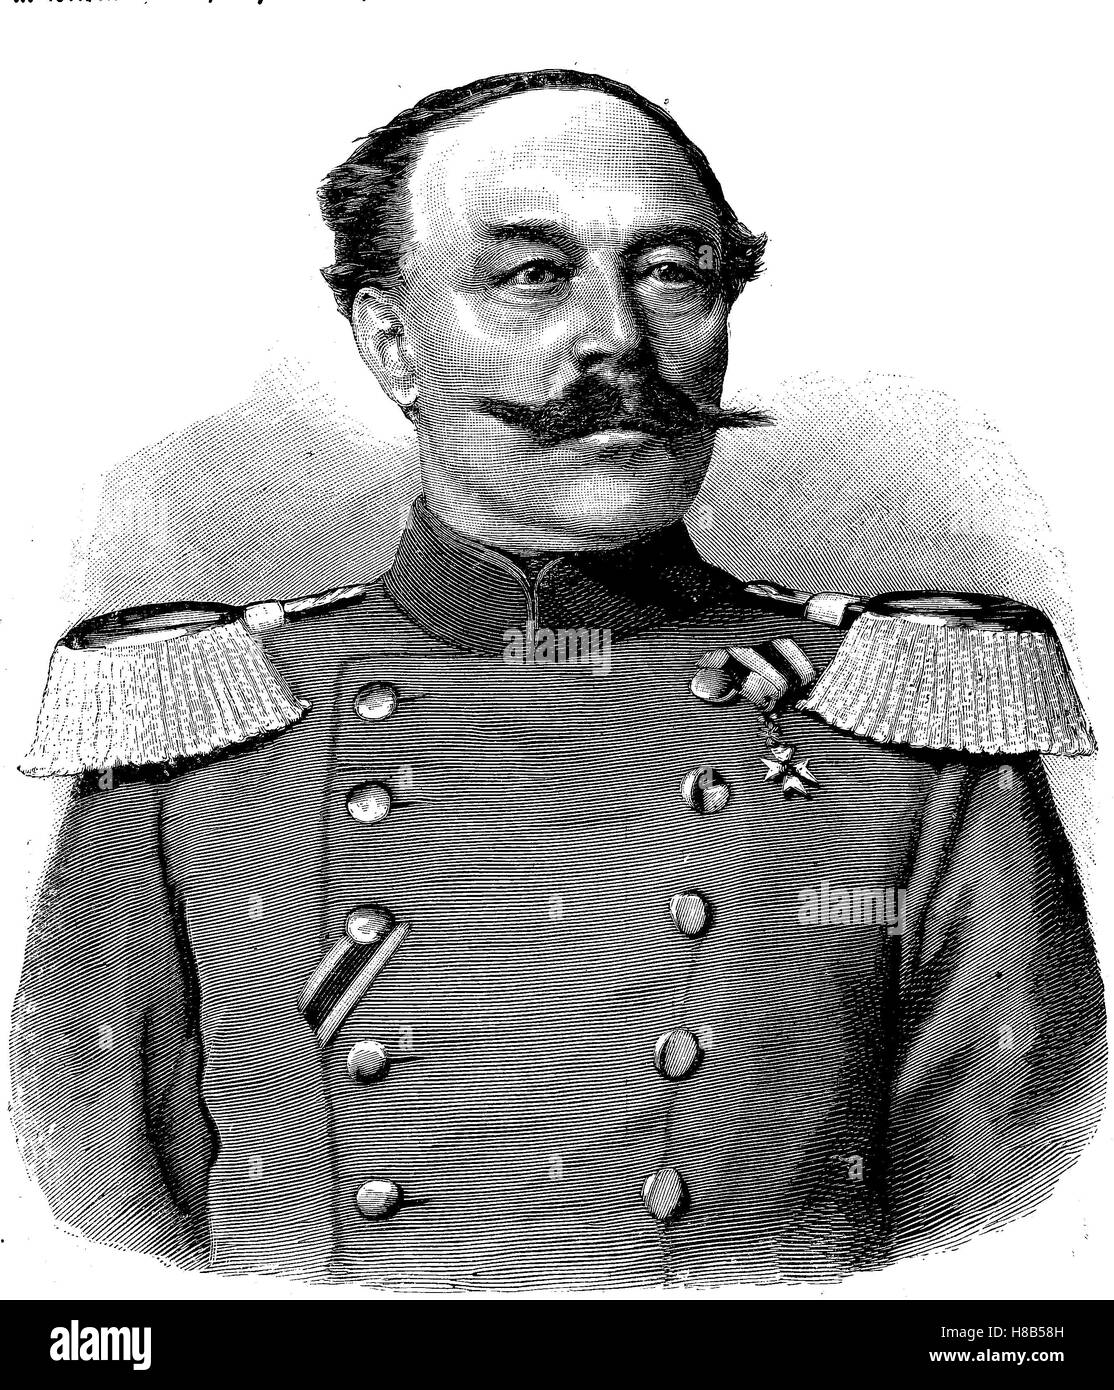 Benignus Ritter von Safferling, war 30. November 1825 - 4. September 1895, ein bayerischer General der Infanterie und Kriegsminister unter Otto von Bayern, Holzschnitt aus dem Jahre 1892 Stockfoto